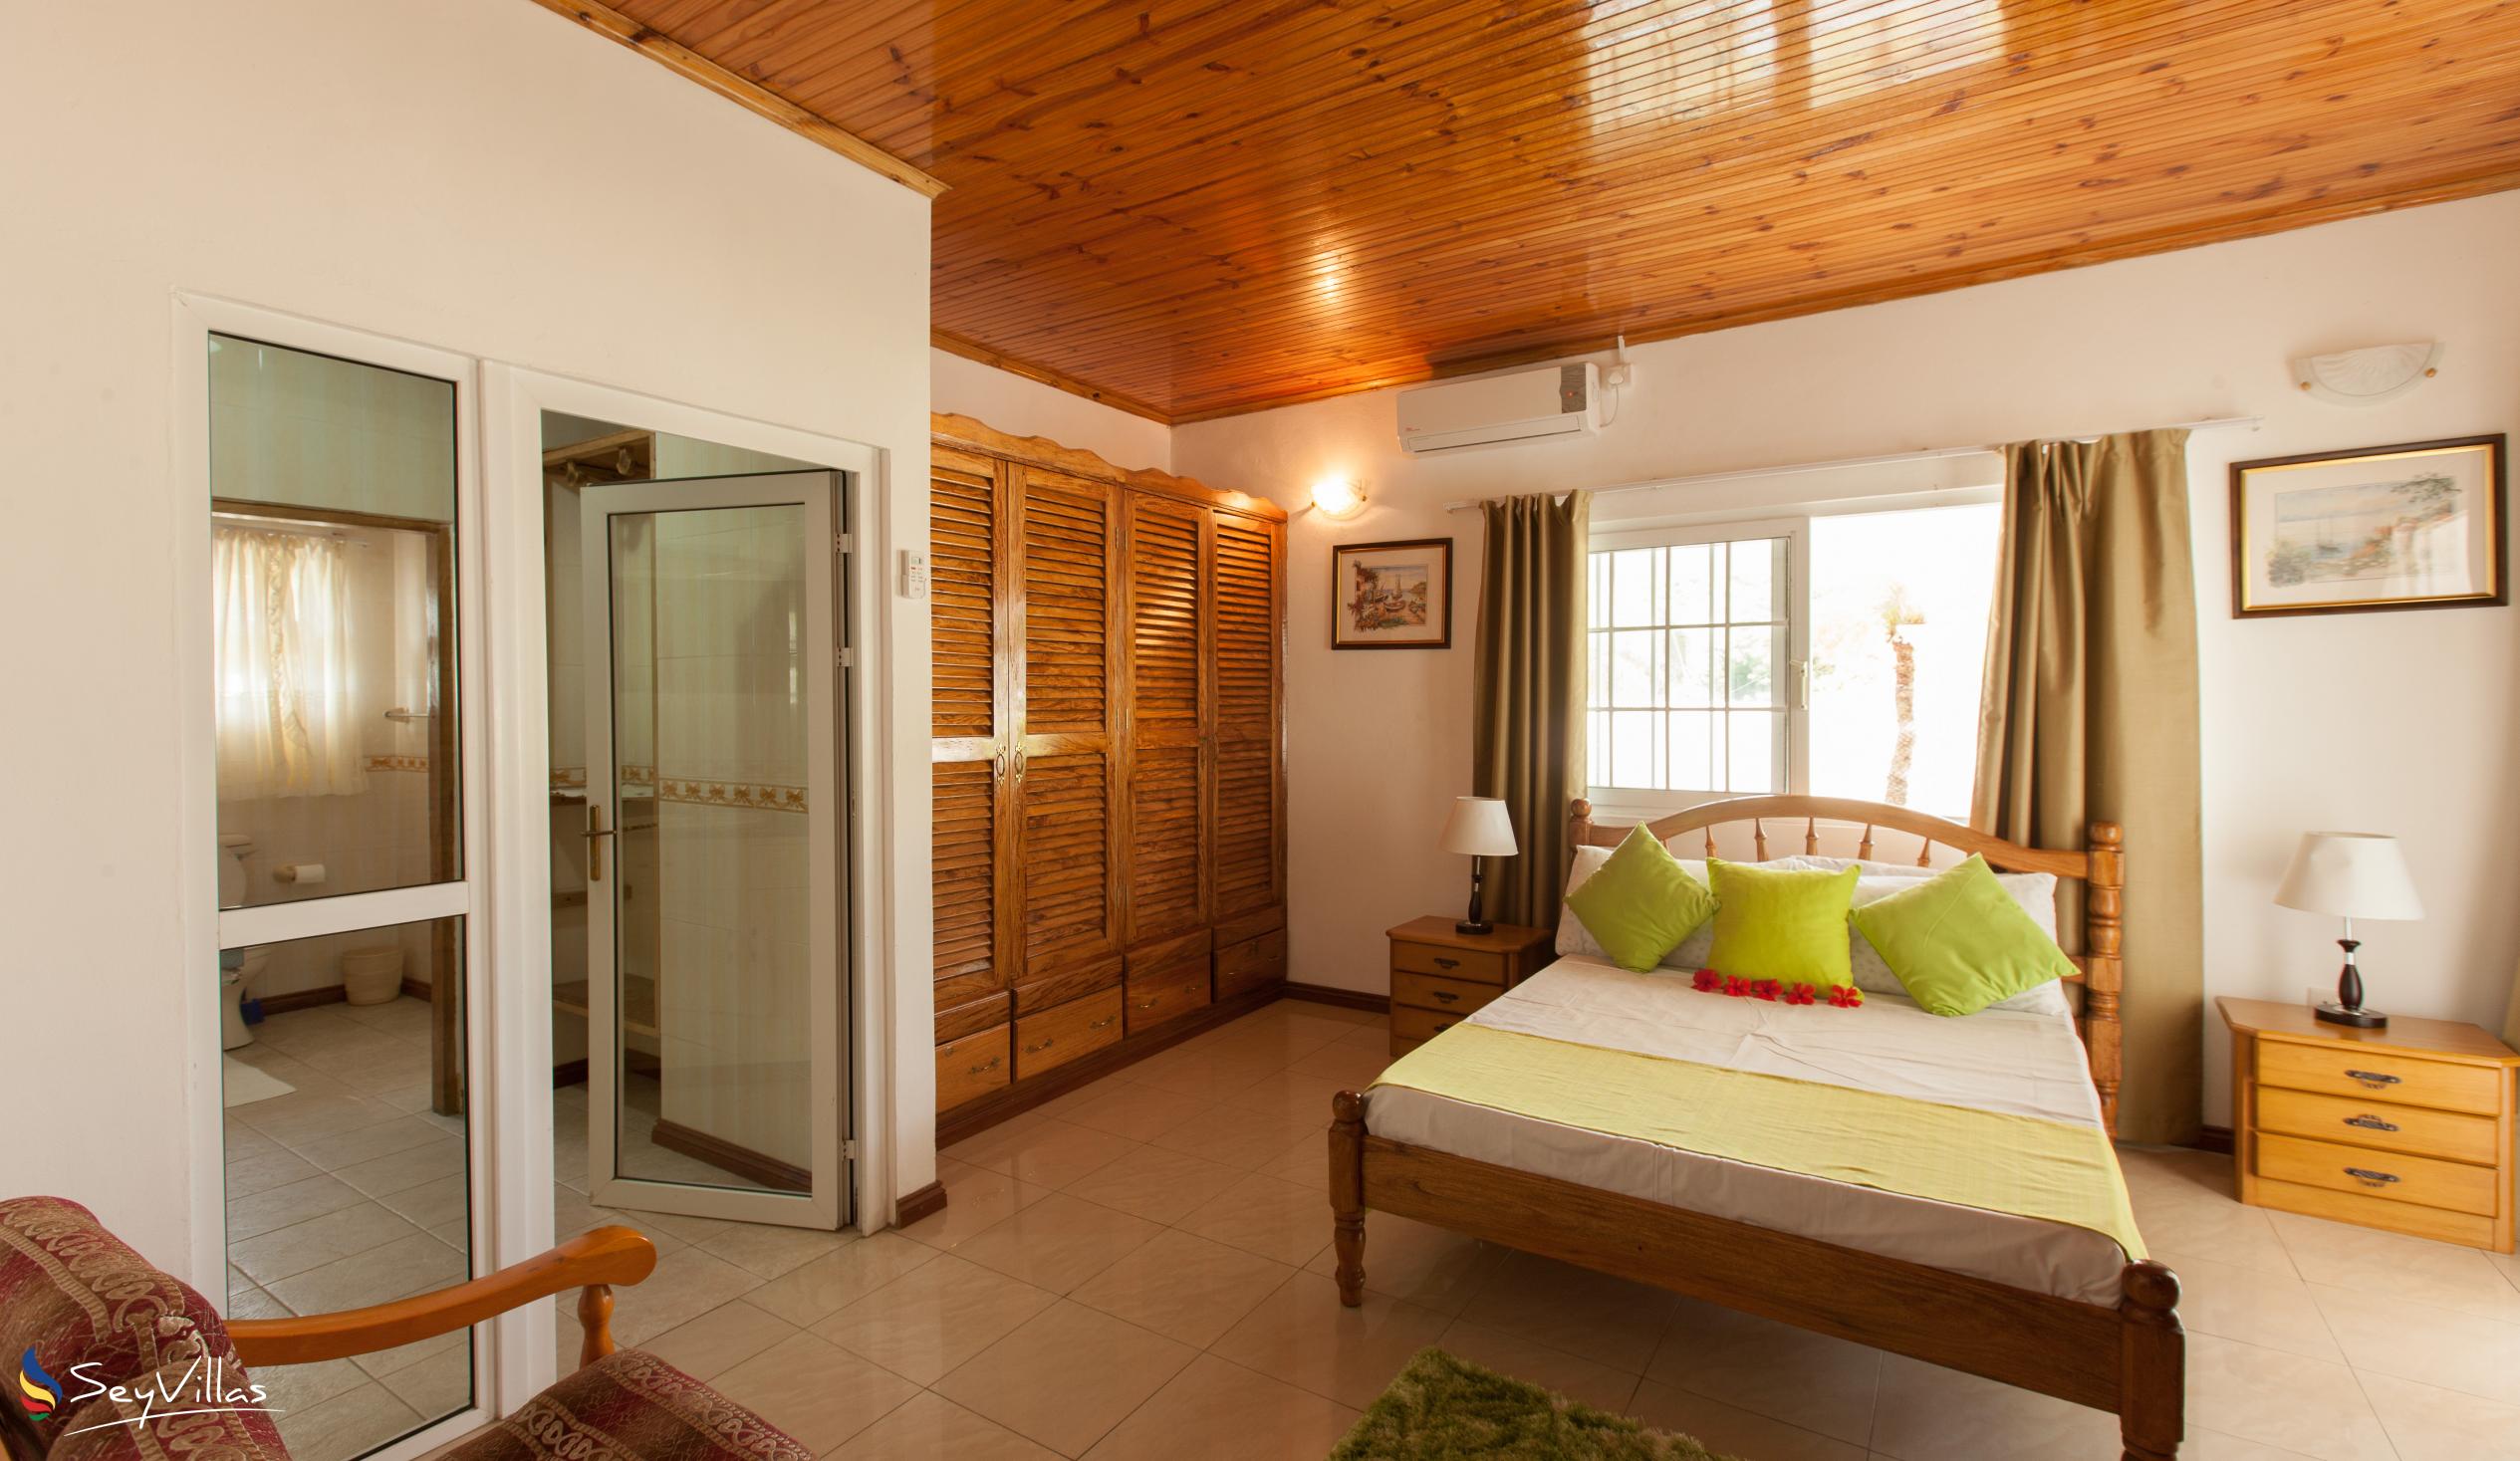 Foto 20: Villa Confort - Praslin (Seychelles)